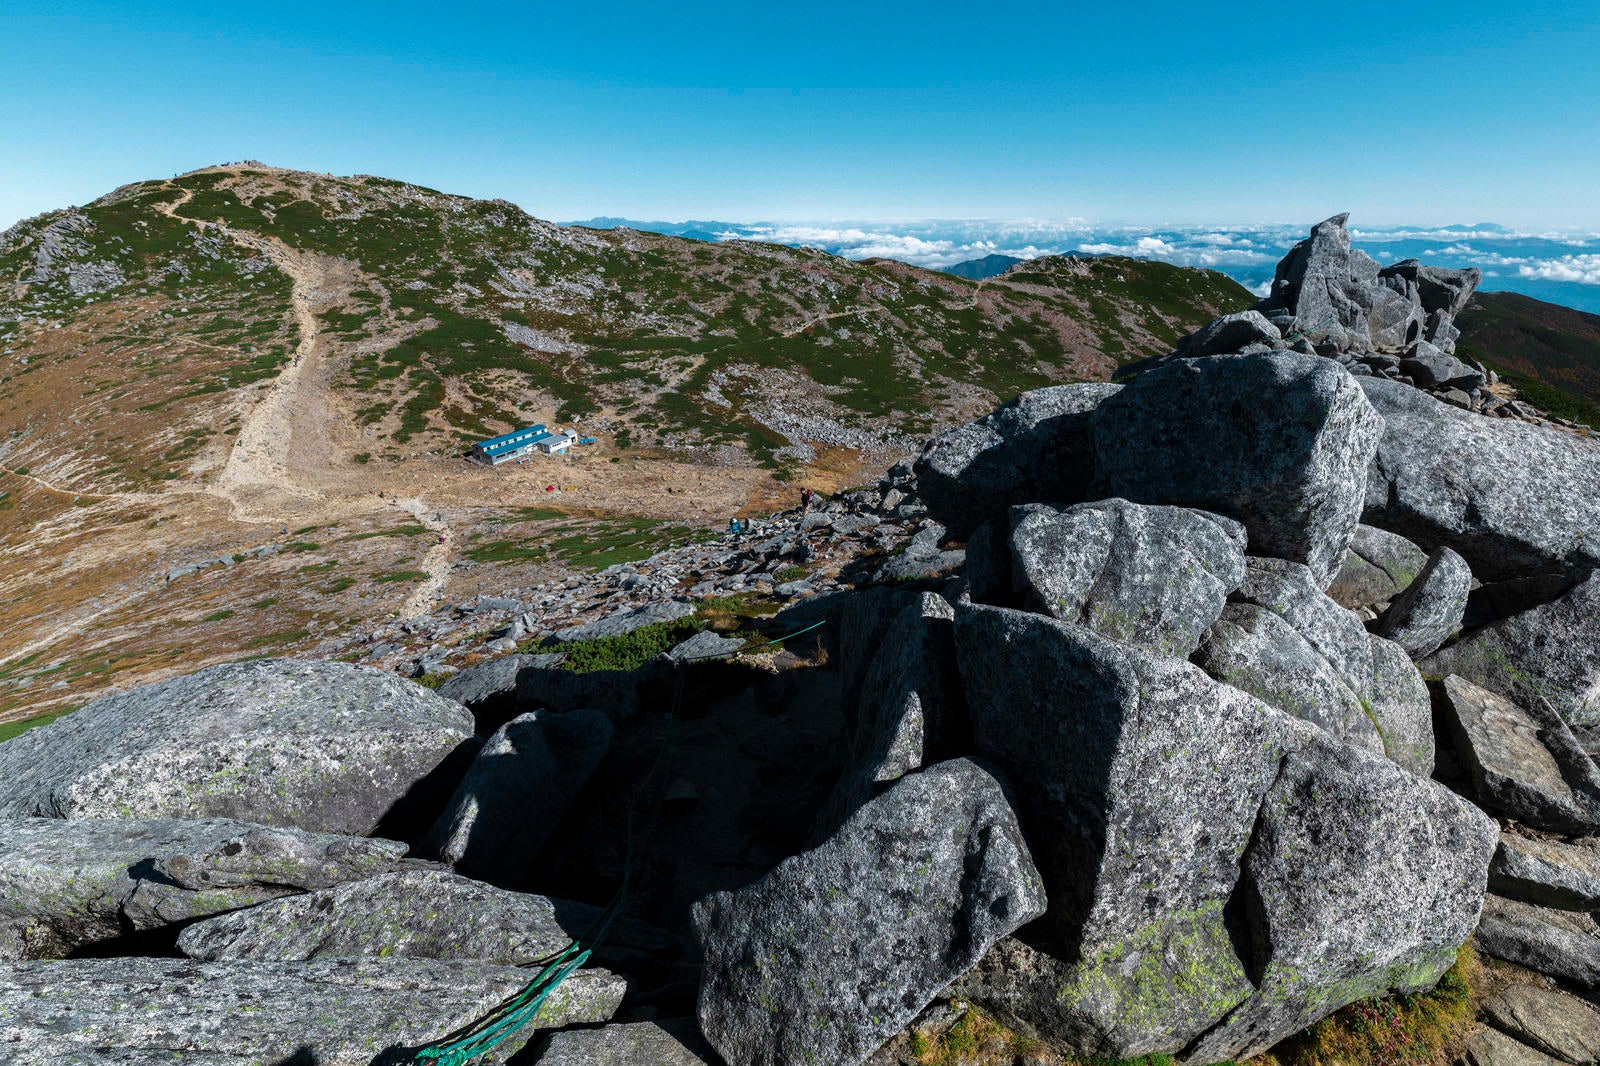 「紅葉の木曽駒ヶ岳山頂を中岳から見た景色」の写真